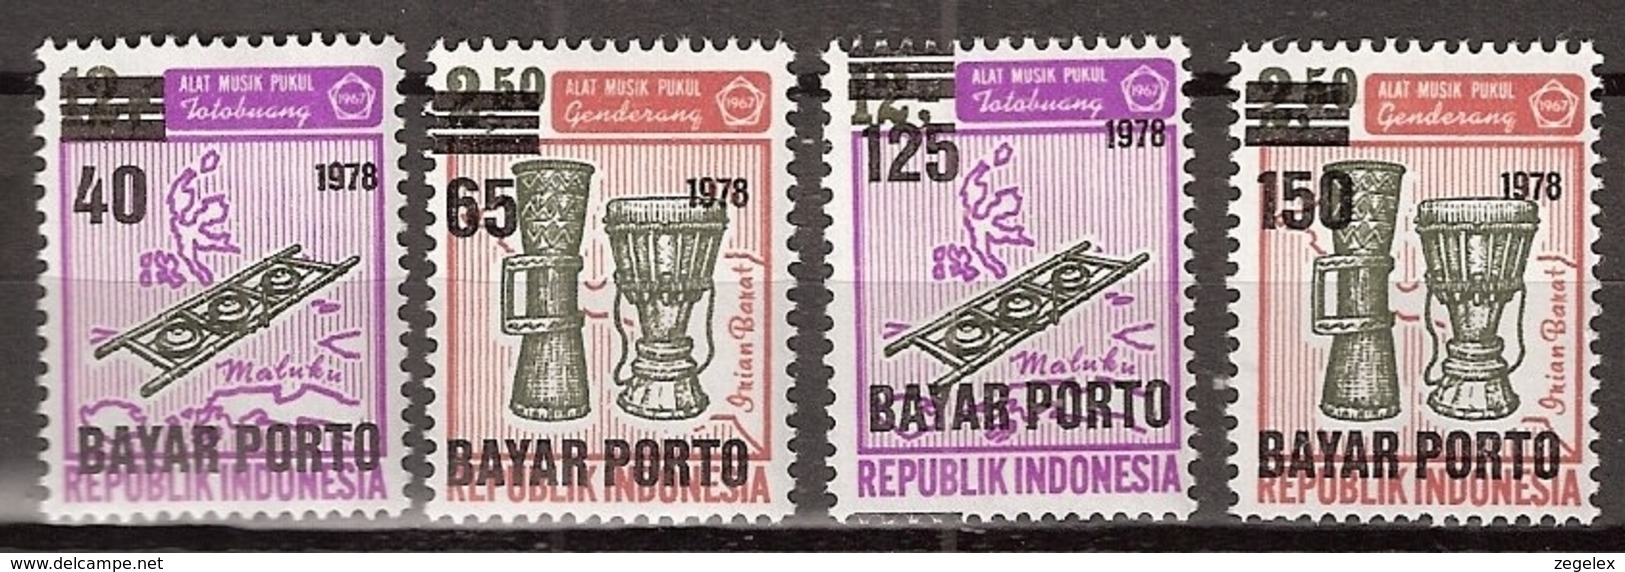 Indonesia 1978 Port, Dienst, Service ZBL 73-76 MNH/** Postfrisch - Indonesien